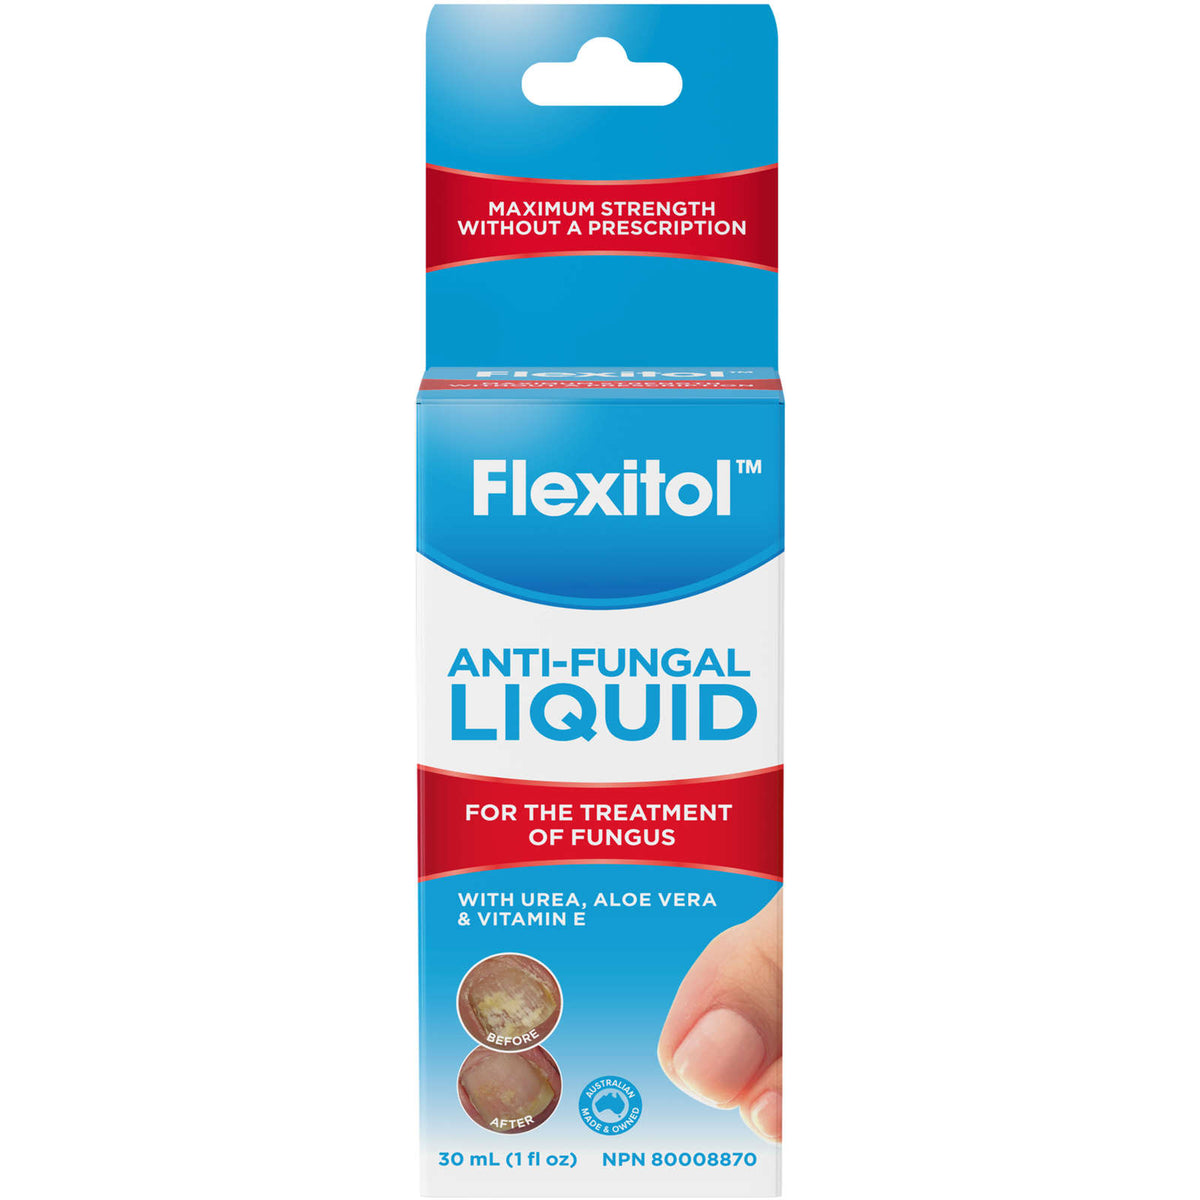 Anti-Fungal Liquid